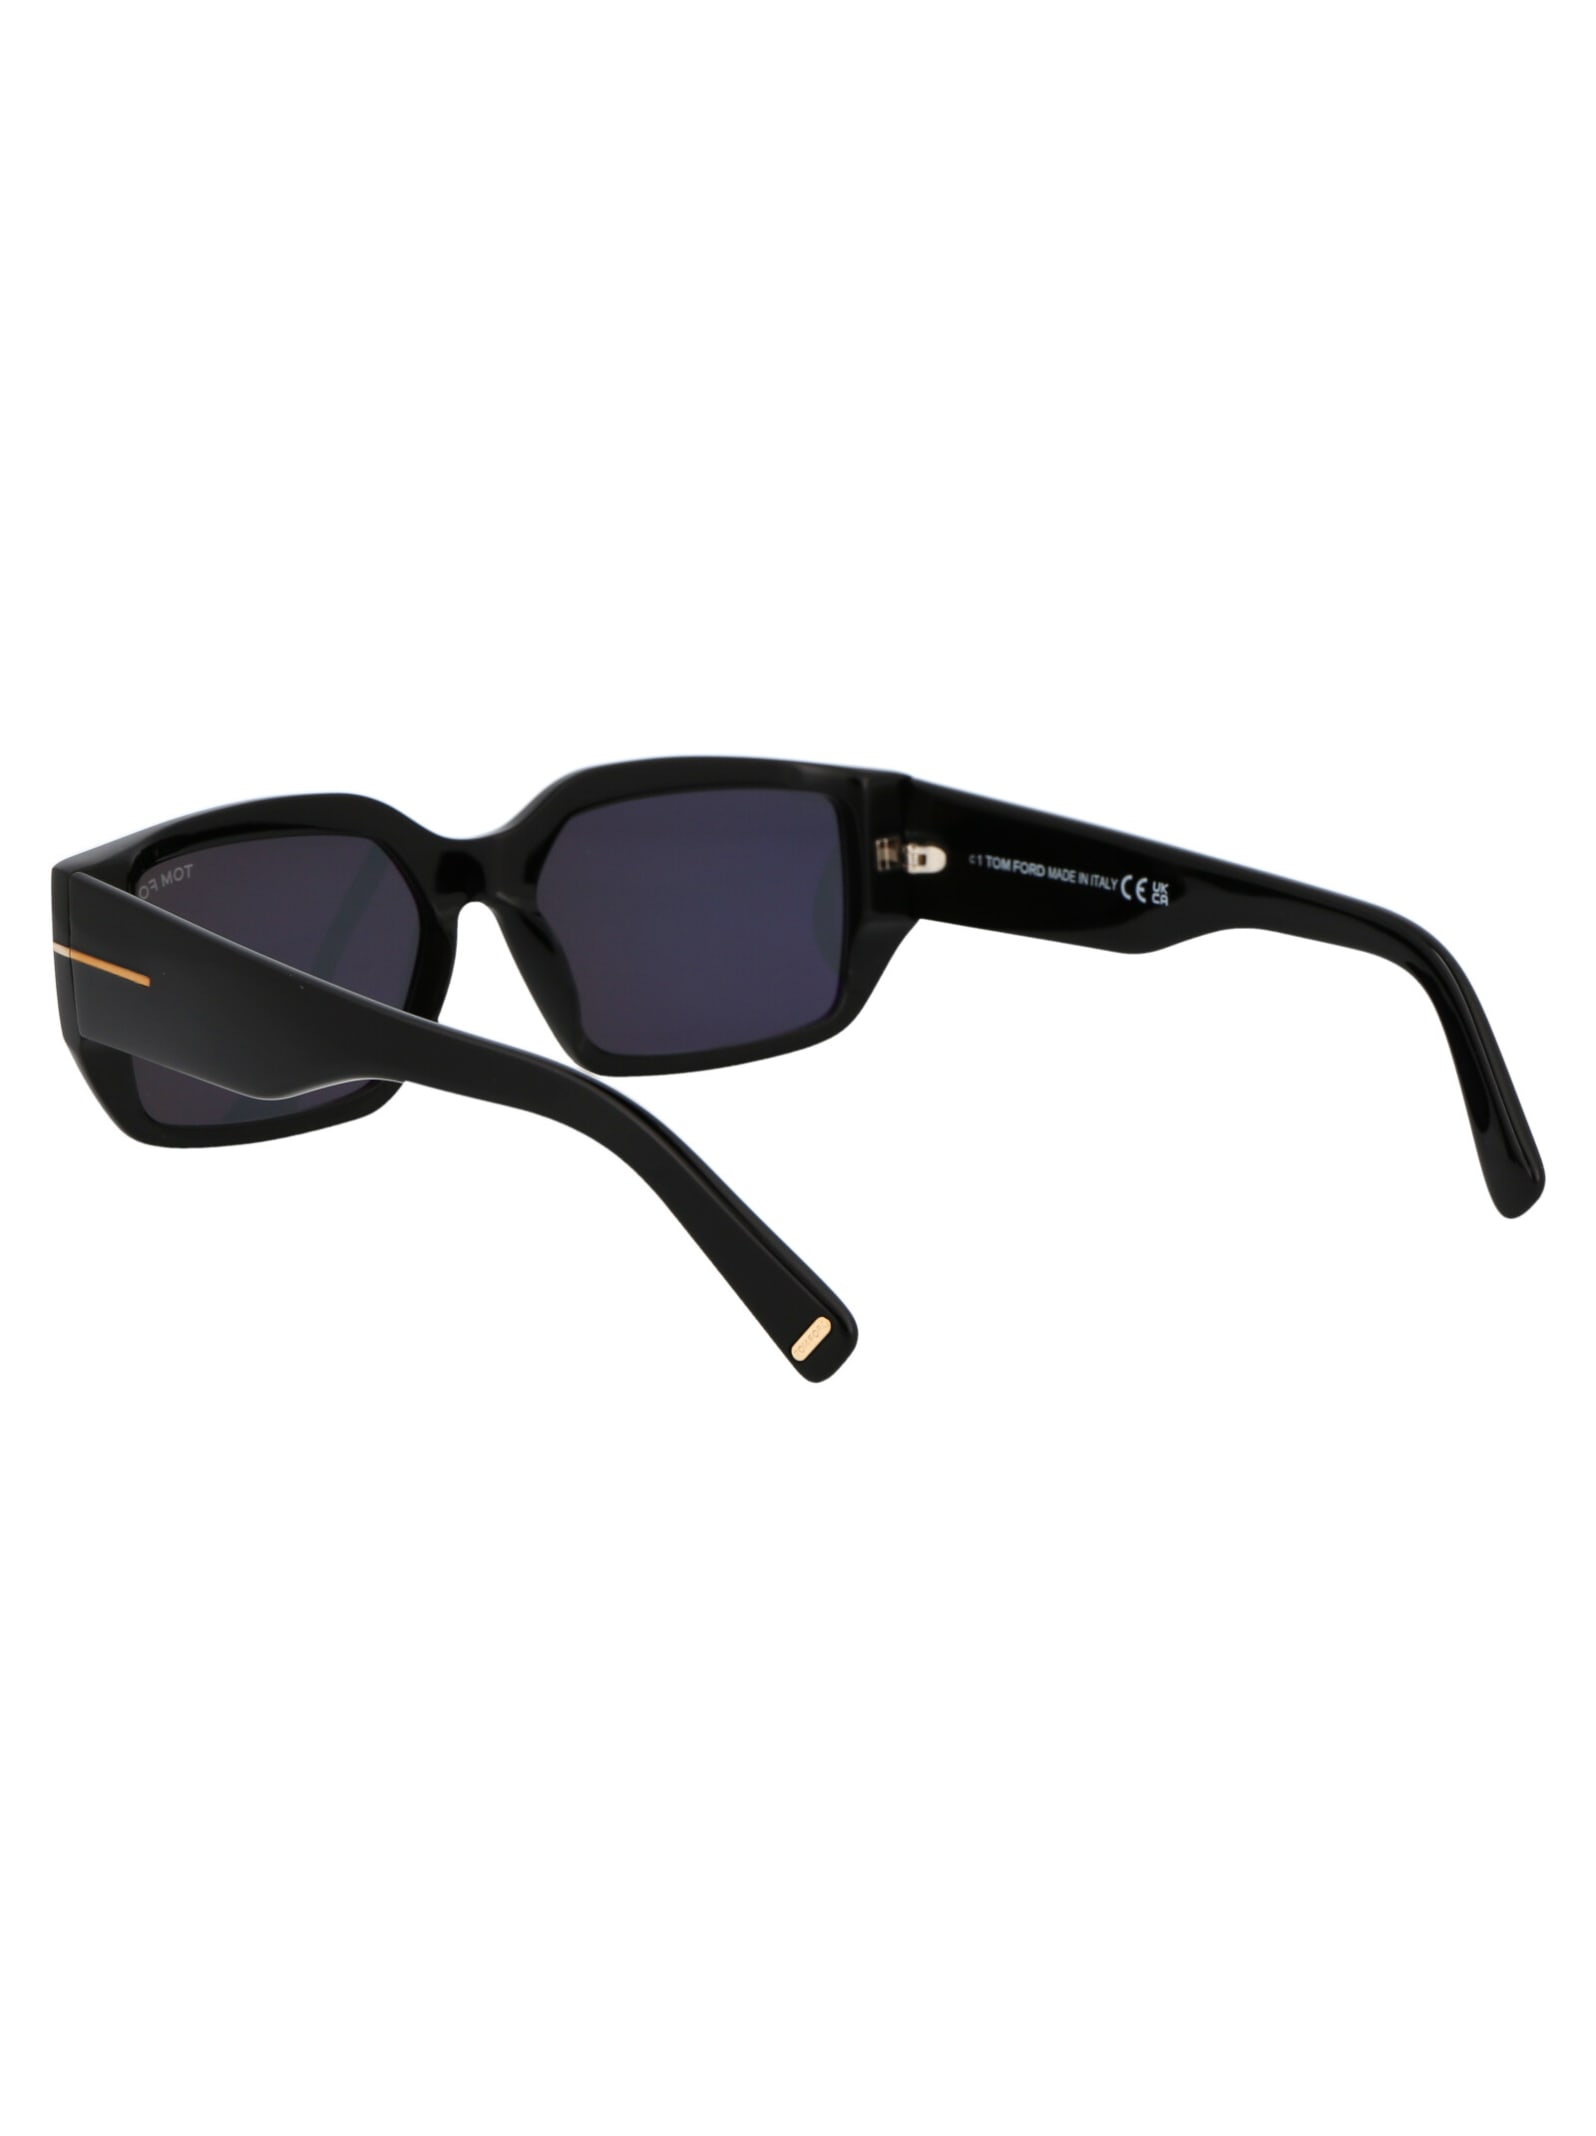 Shop Tom Ford Silvano-02 Sunglasses In 01a Nero Lucido / Fumo